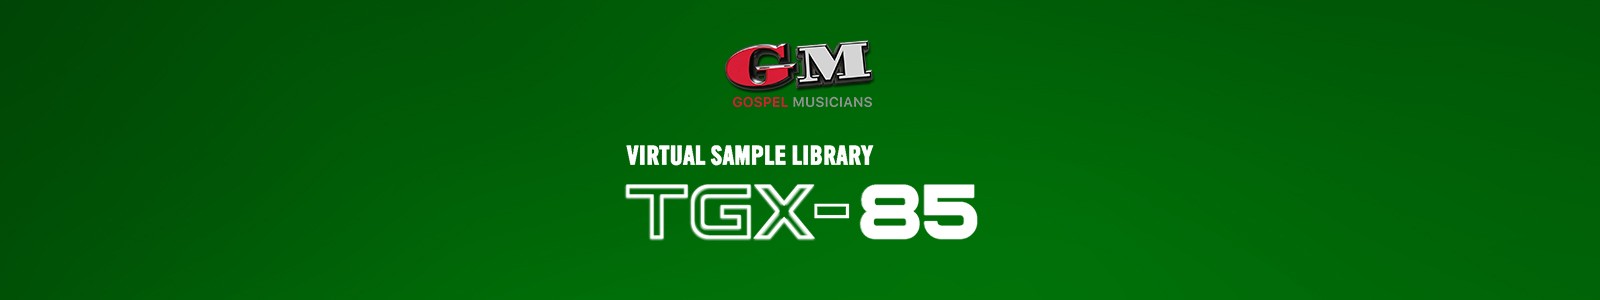 Gospel Musicians TGX-85